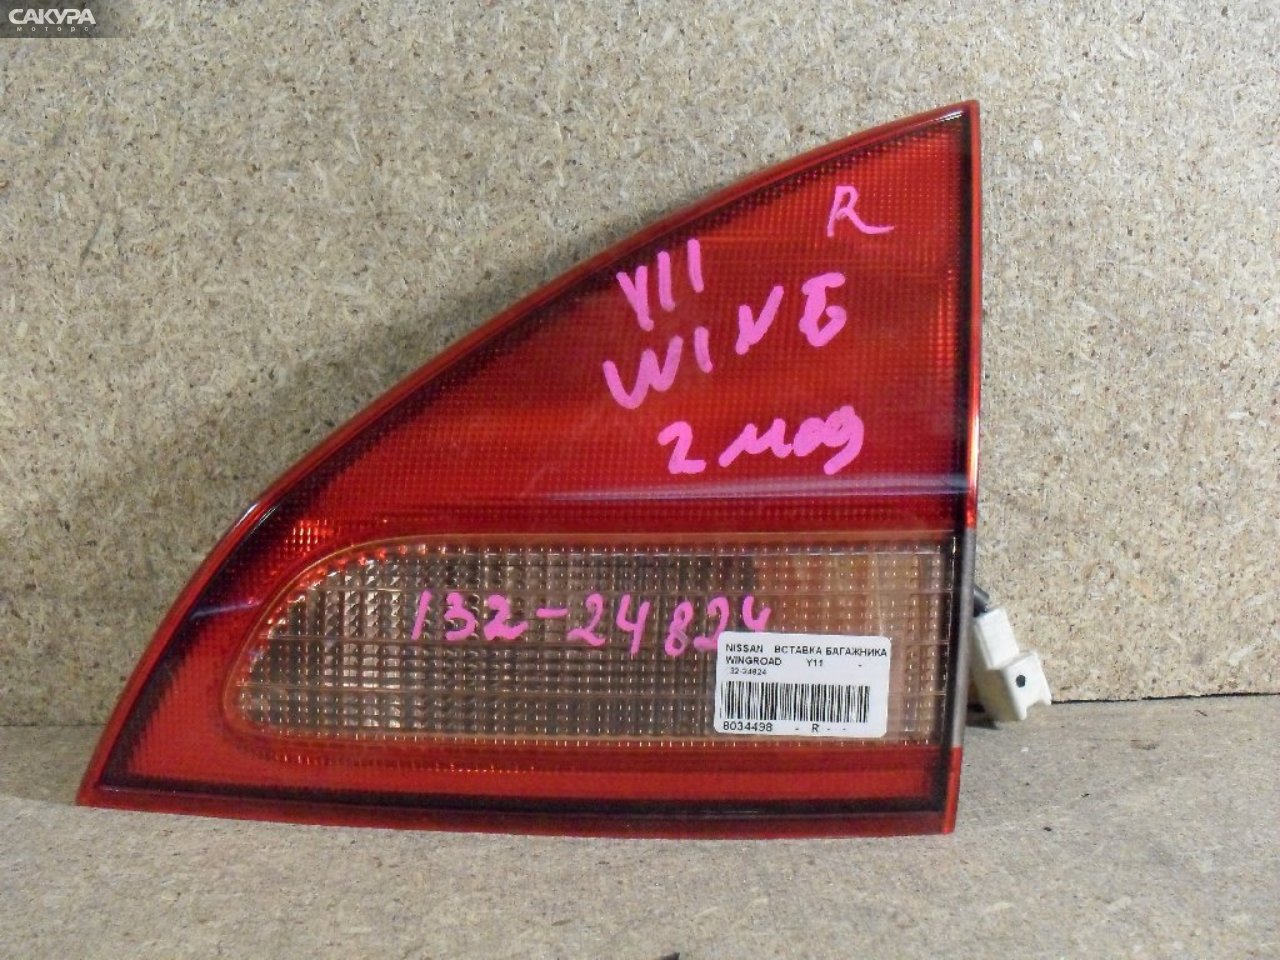 Фонарь вставка багажника правый Nissan Wingroad WFY11 132-24824: купить в Сакура Абакан.